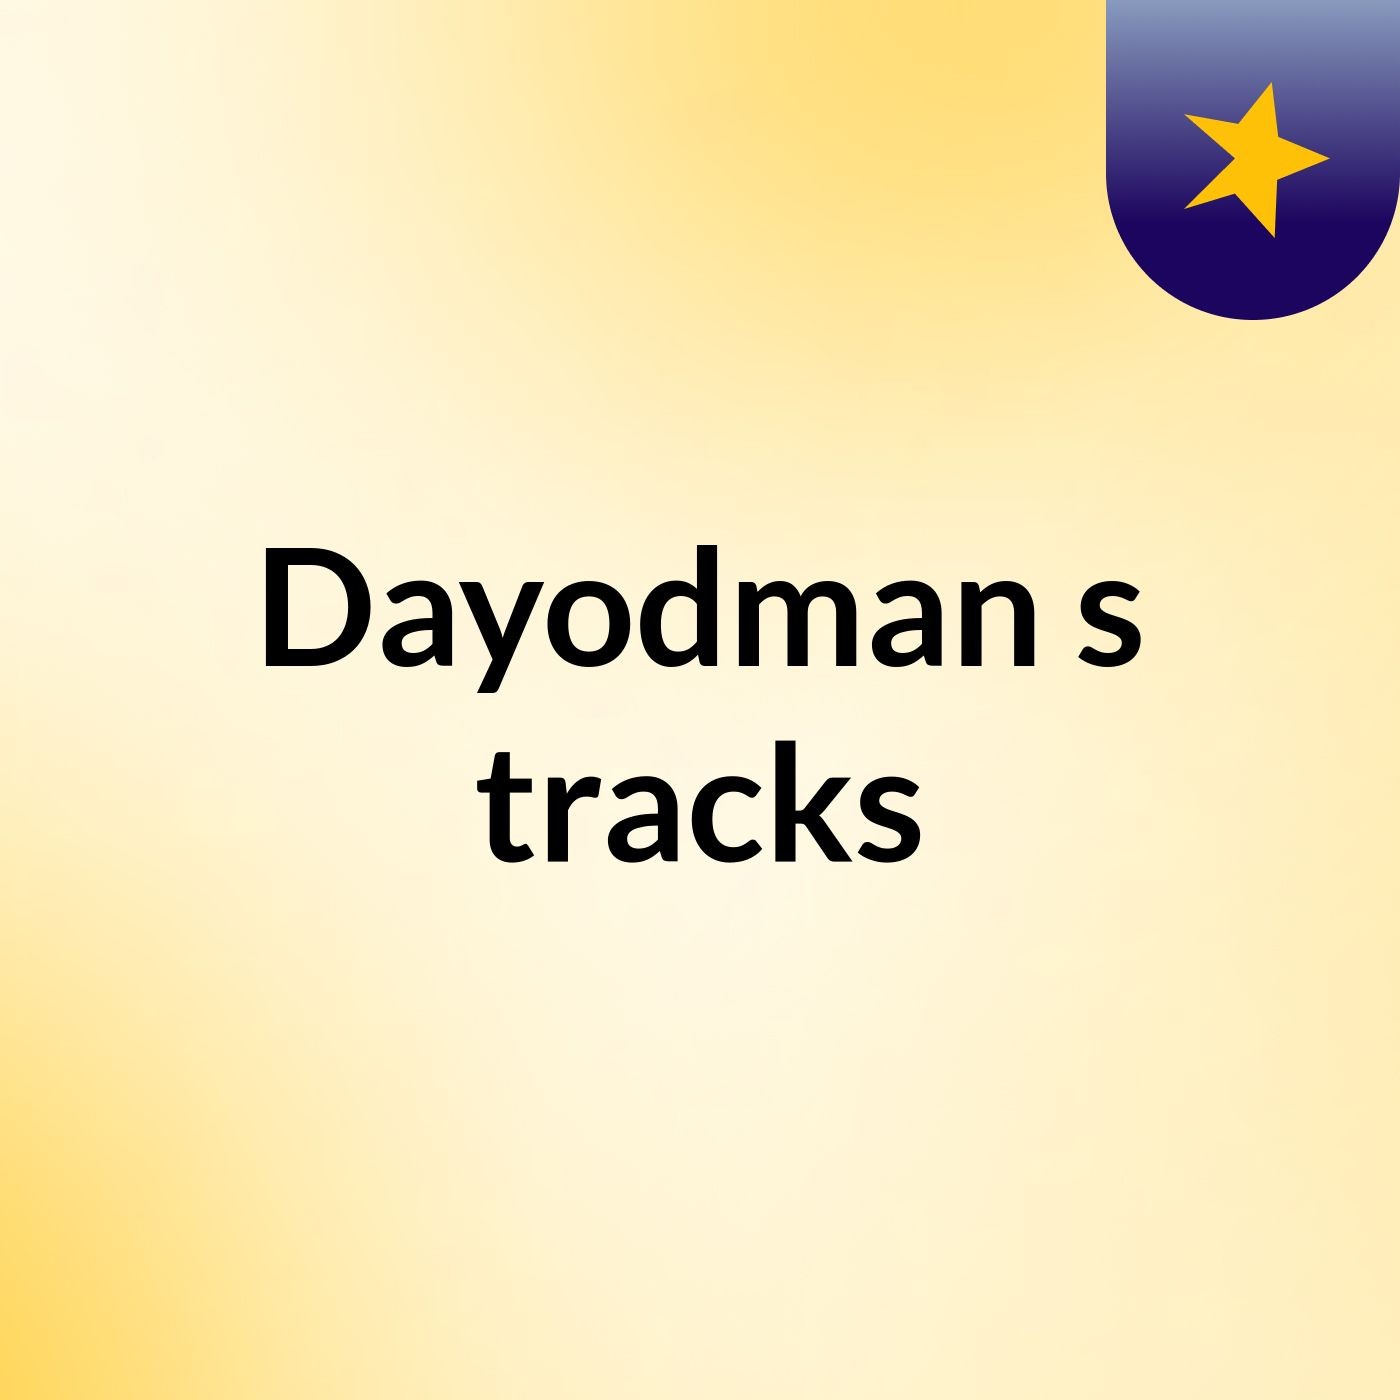 Dayodman's tracks